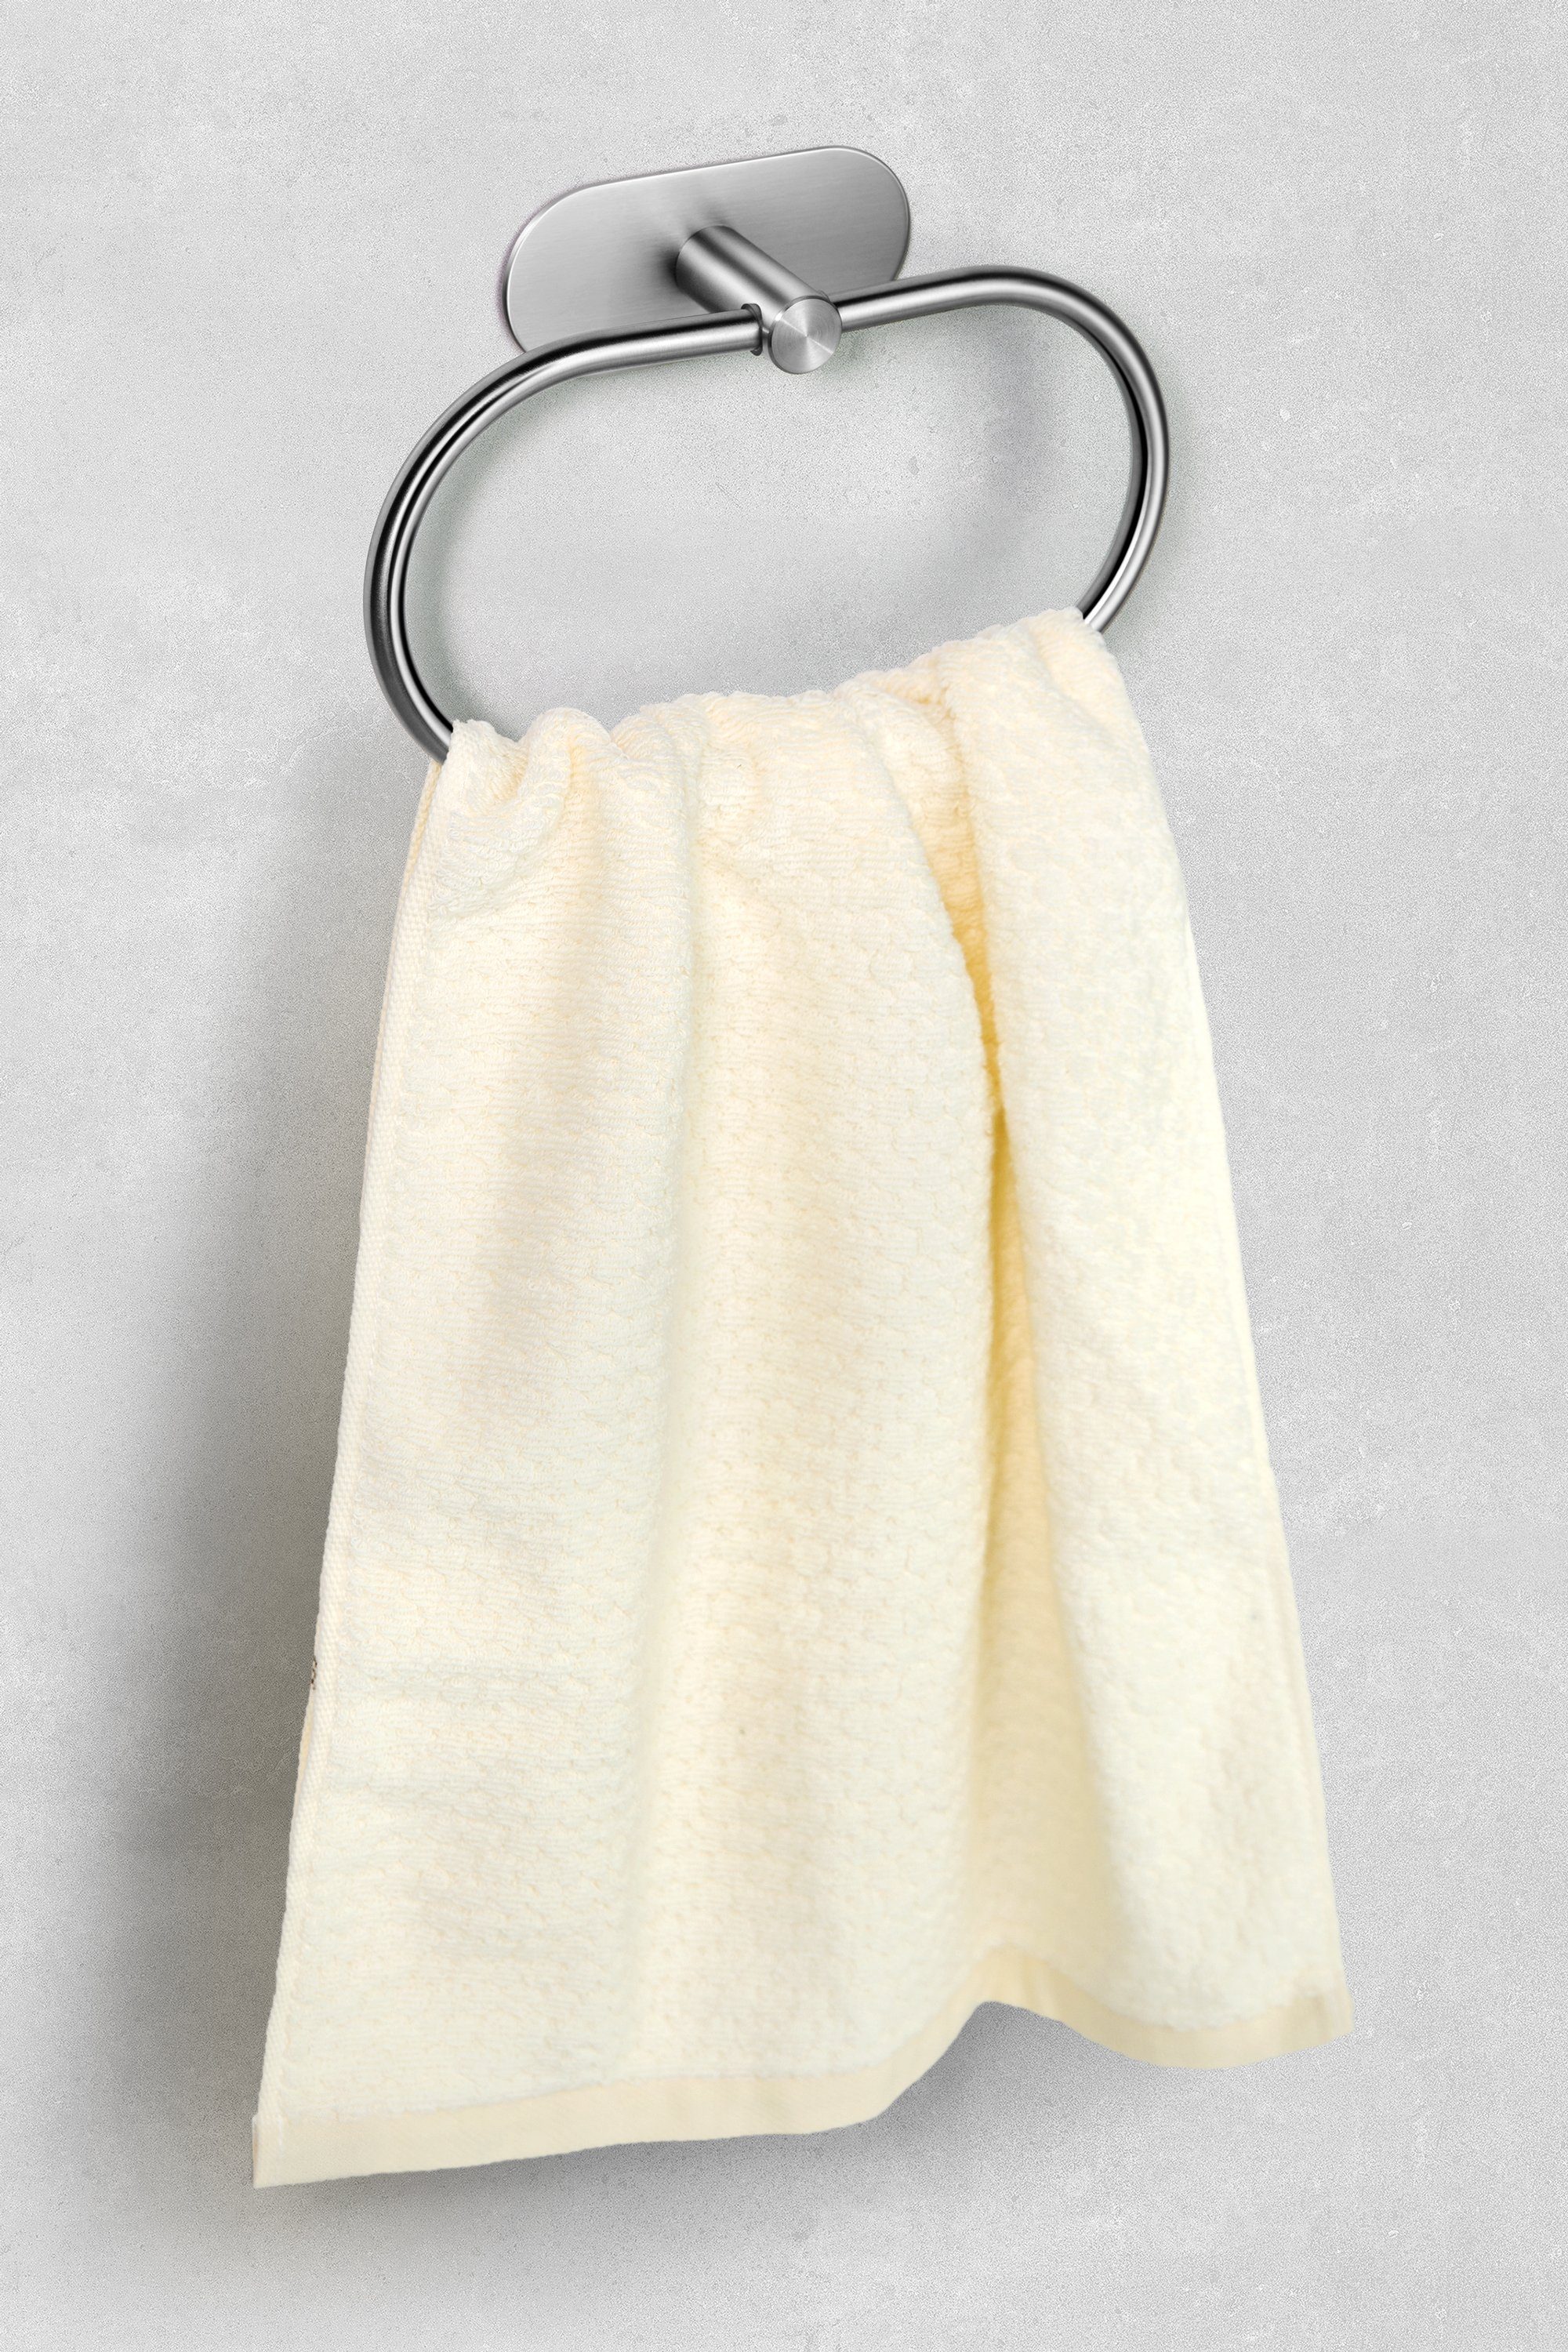 Edelstahl Selbstklebender Silber aus Handtuch Handtuchhalter Klebehaken Haken Montage Bad Handtuchhaken Halter Küche, Klebend Ambrosya WC Handtuchring Einfache